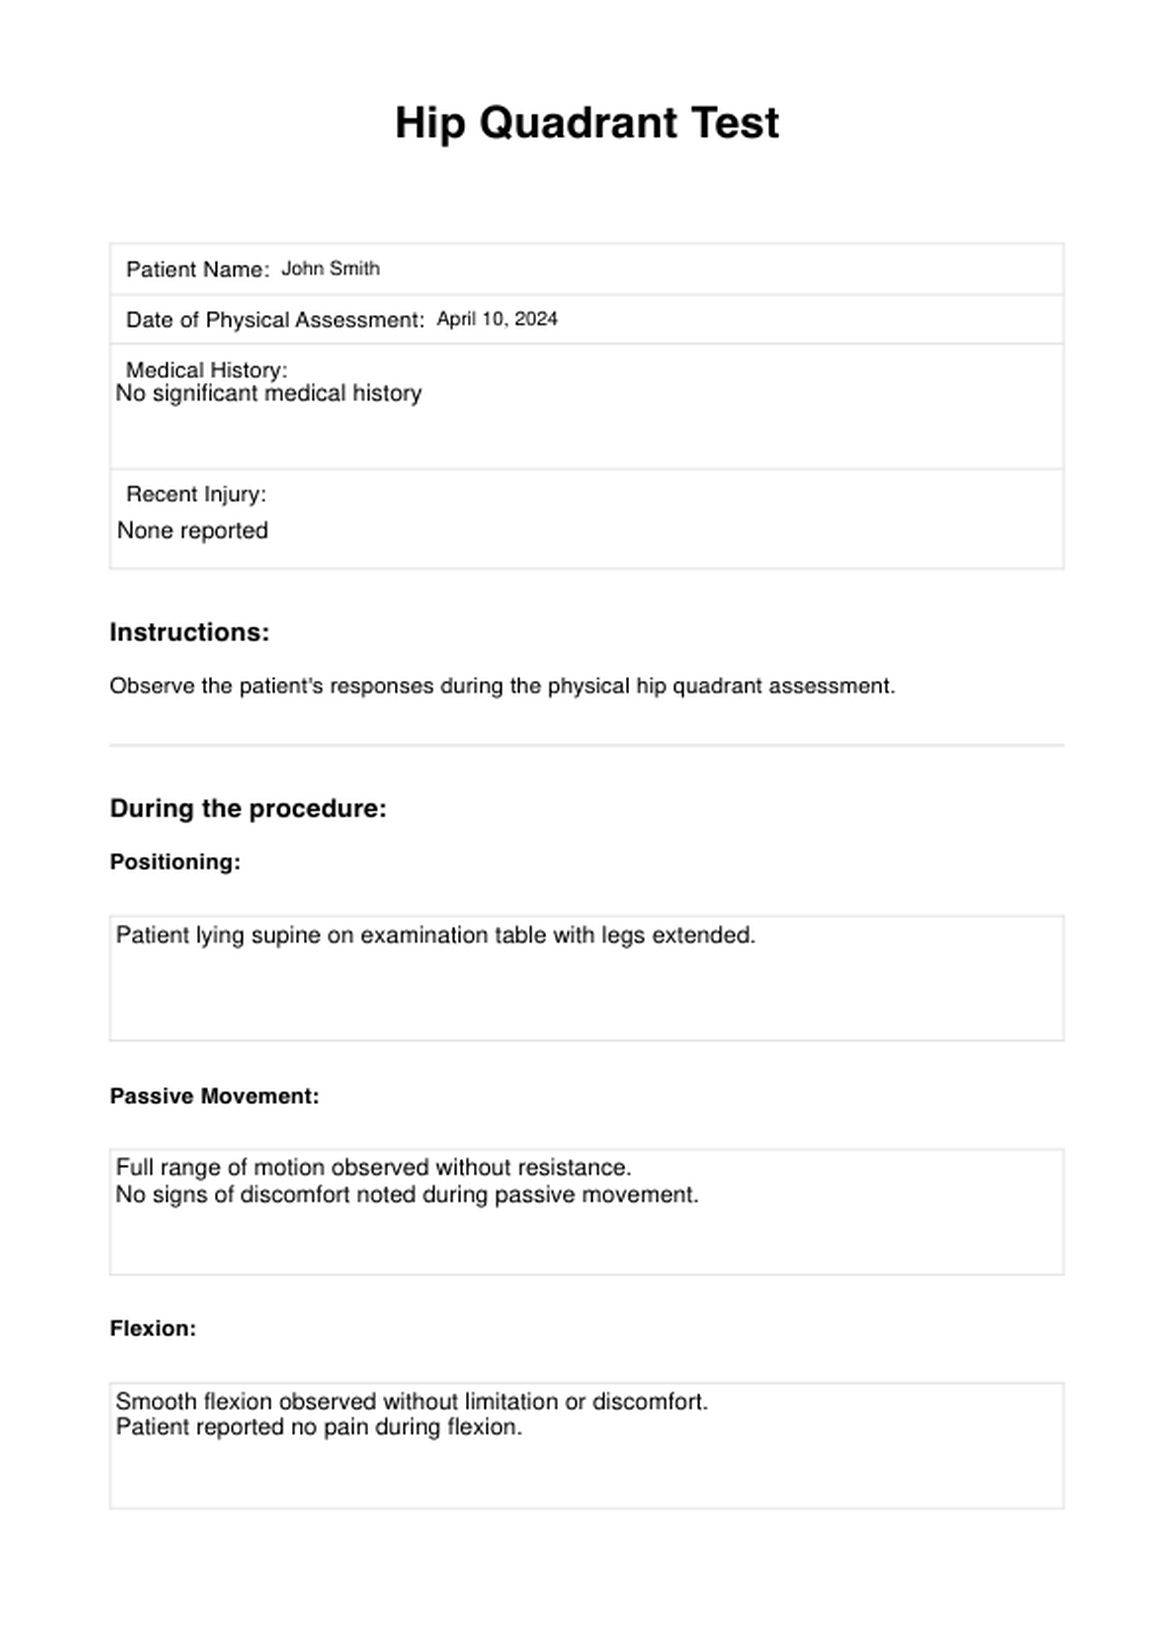 Hip Quadrant Test PDF Example